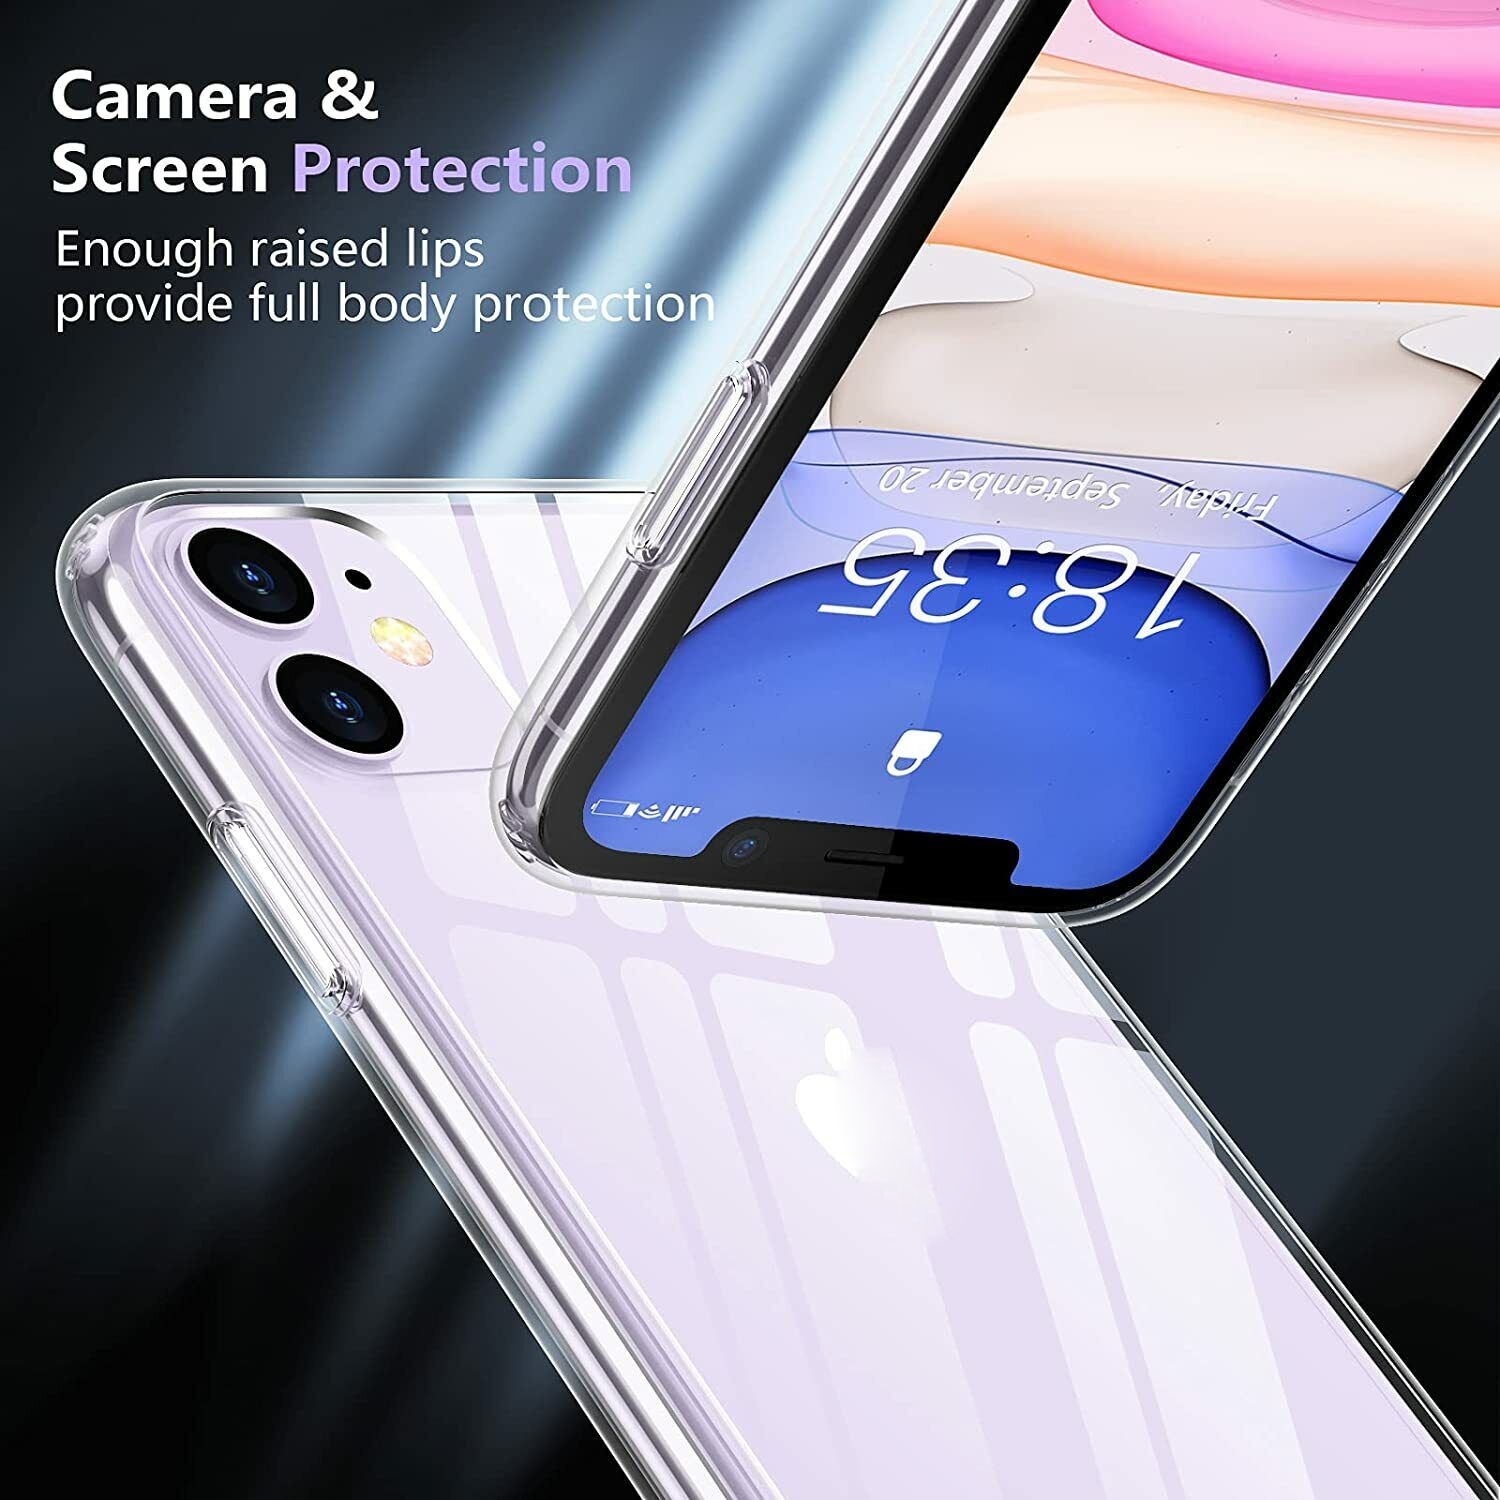 Ốp lưng chống sốc trong suốt cho iPhone 11 (6.1 inch) hiệu Memumi Glitter siêu mỏng 1.5mm độ trong tuyệt đối, chống trầy xước, chống ố vàng, tản nhiệt tốt - hàng nhập khẩu